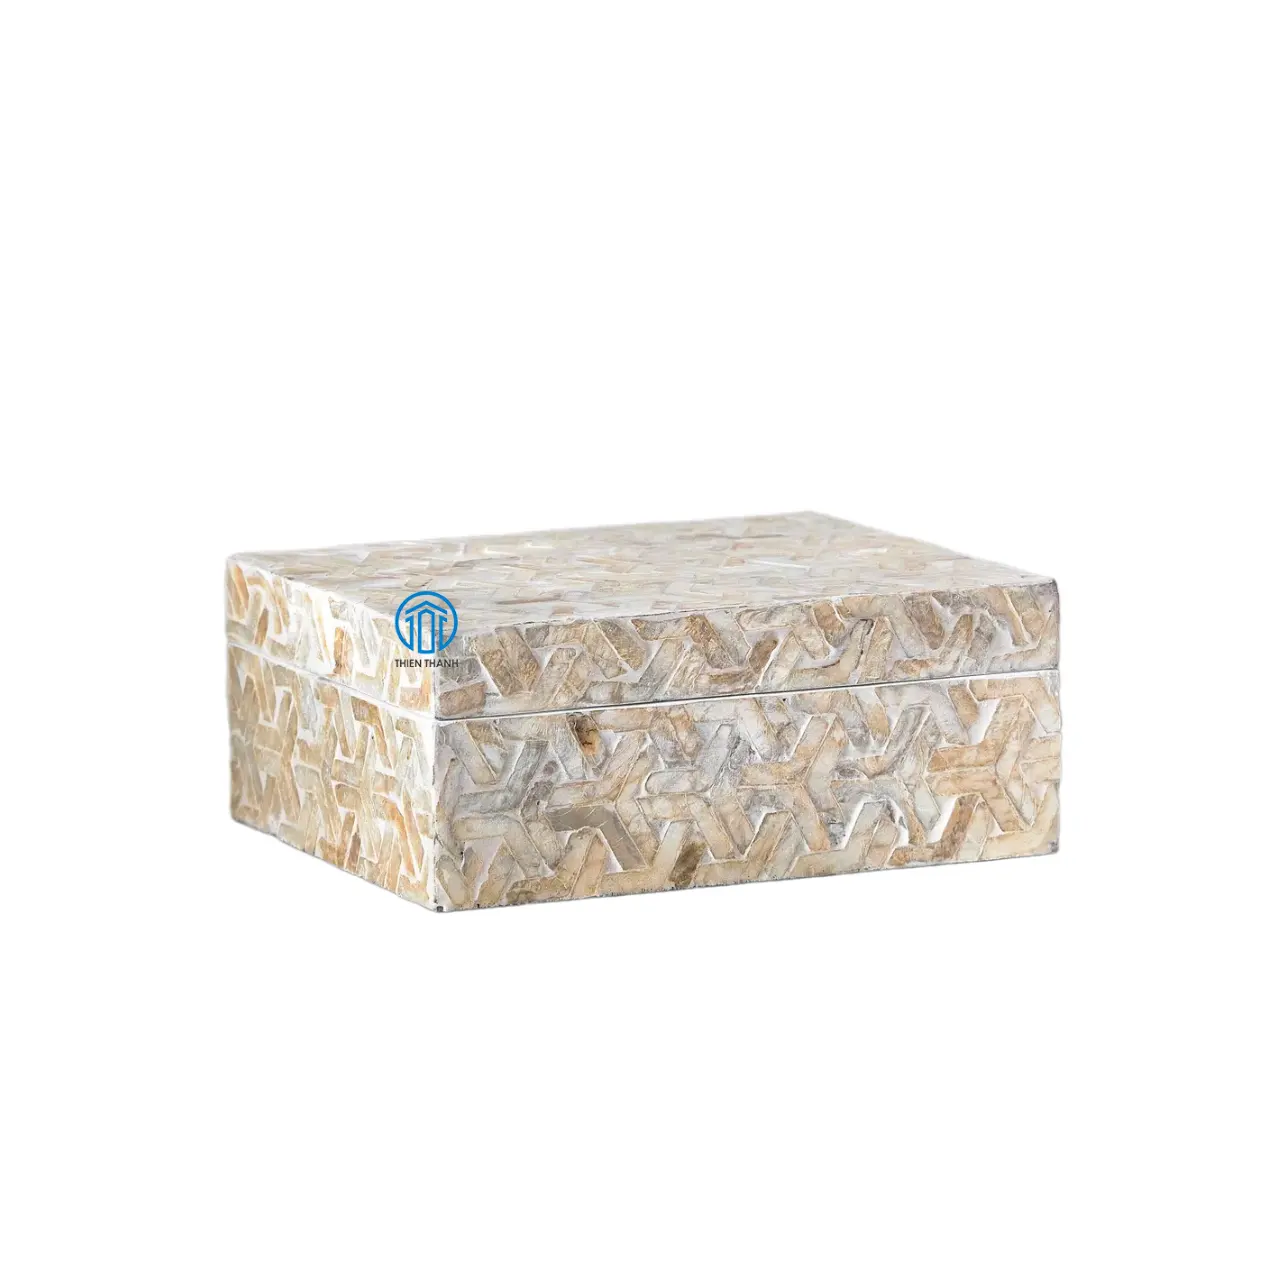 Cajas de fregona únicas modernas decoración del hogar contenedor de incrustaciones de madreperla de madera para caja de almacenamiento de postres hecha en Vietnam